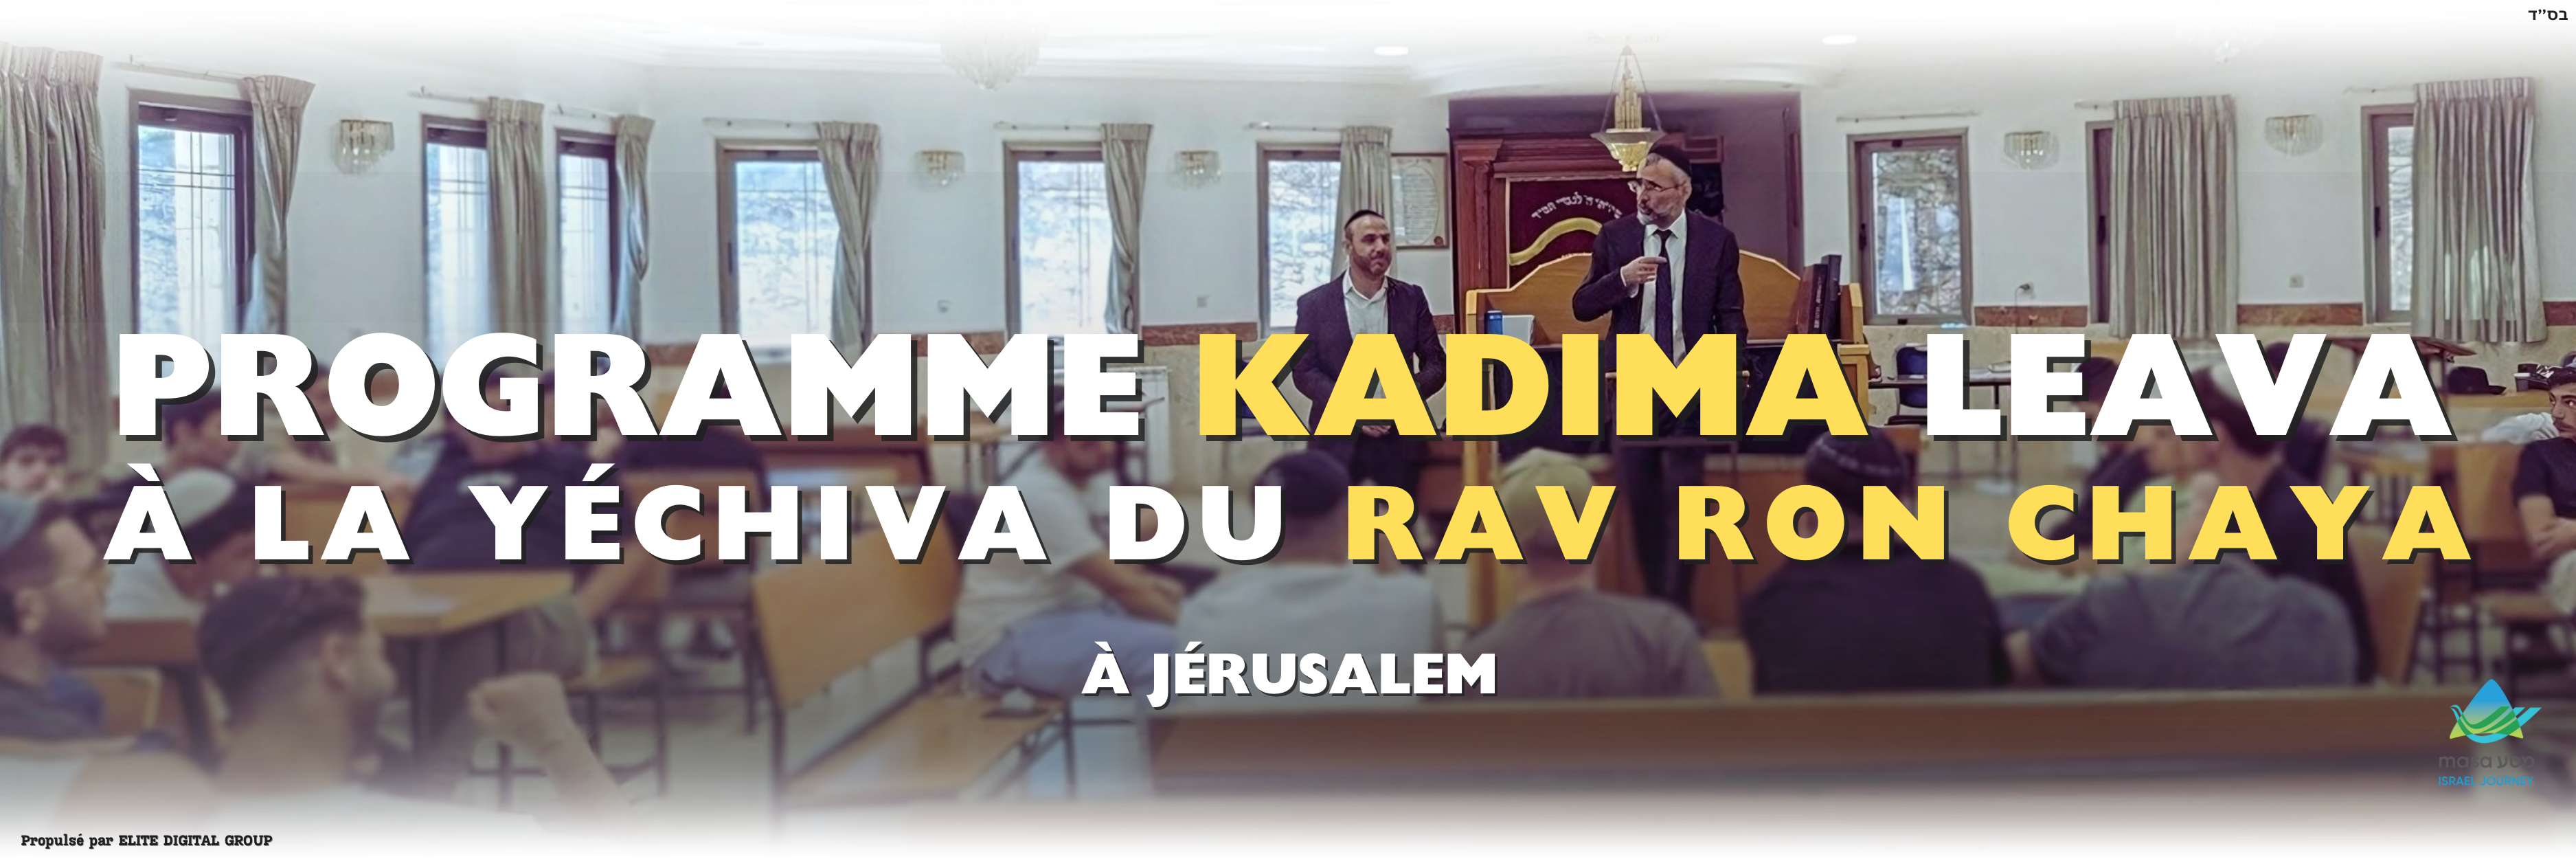 Site Kadima - bannière